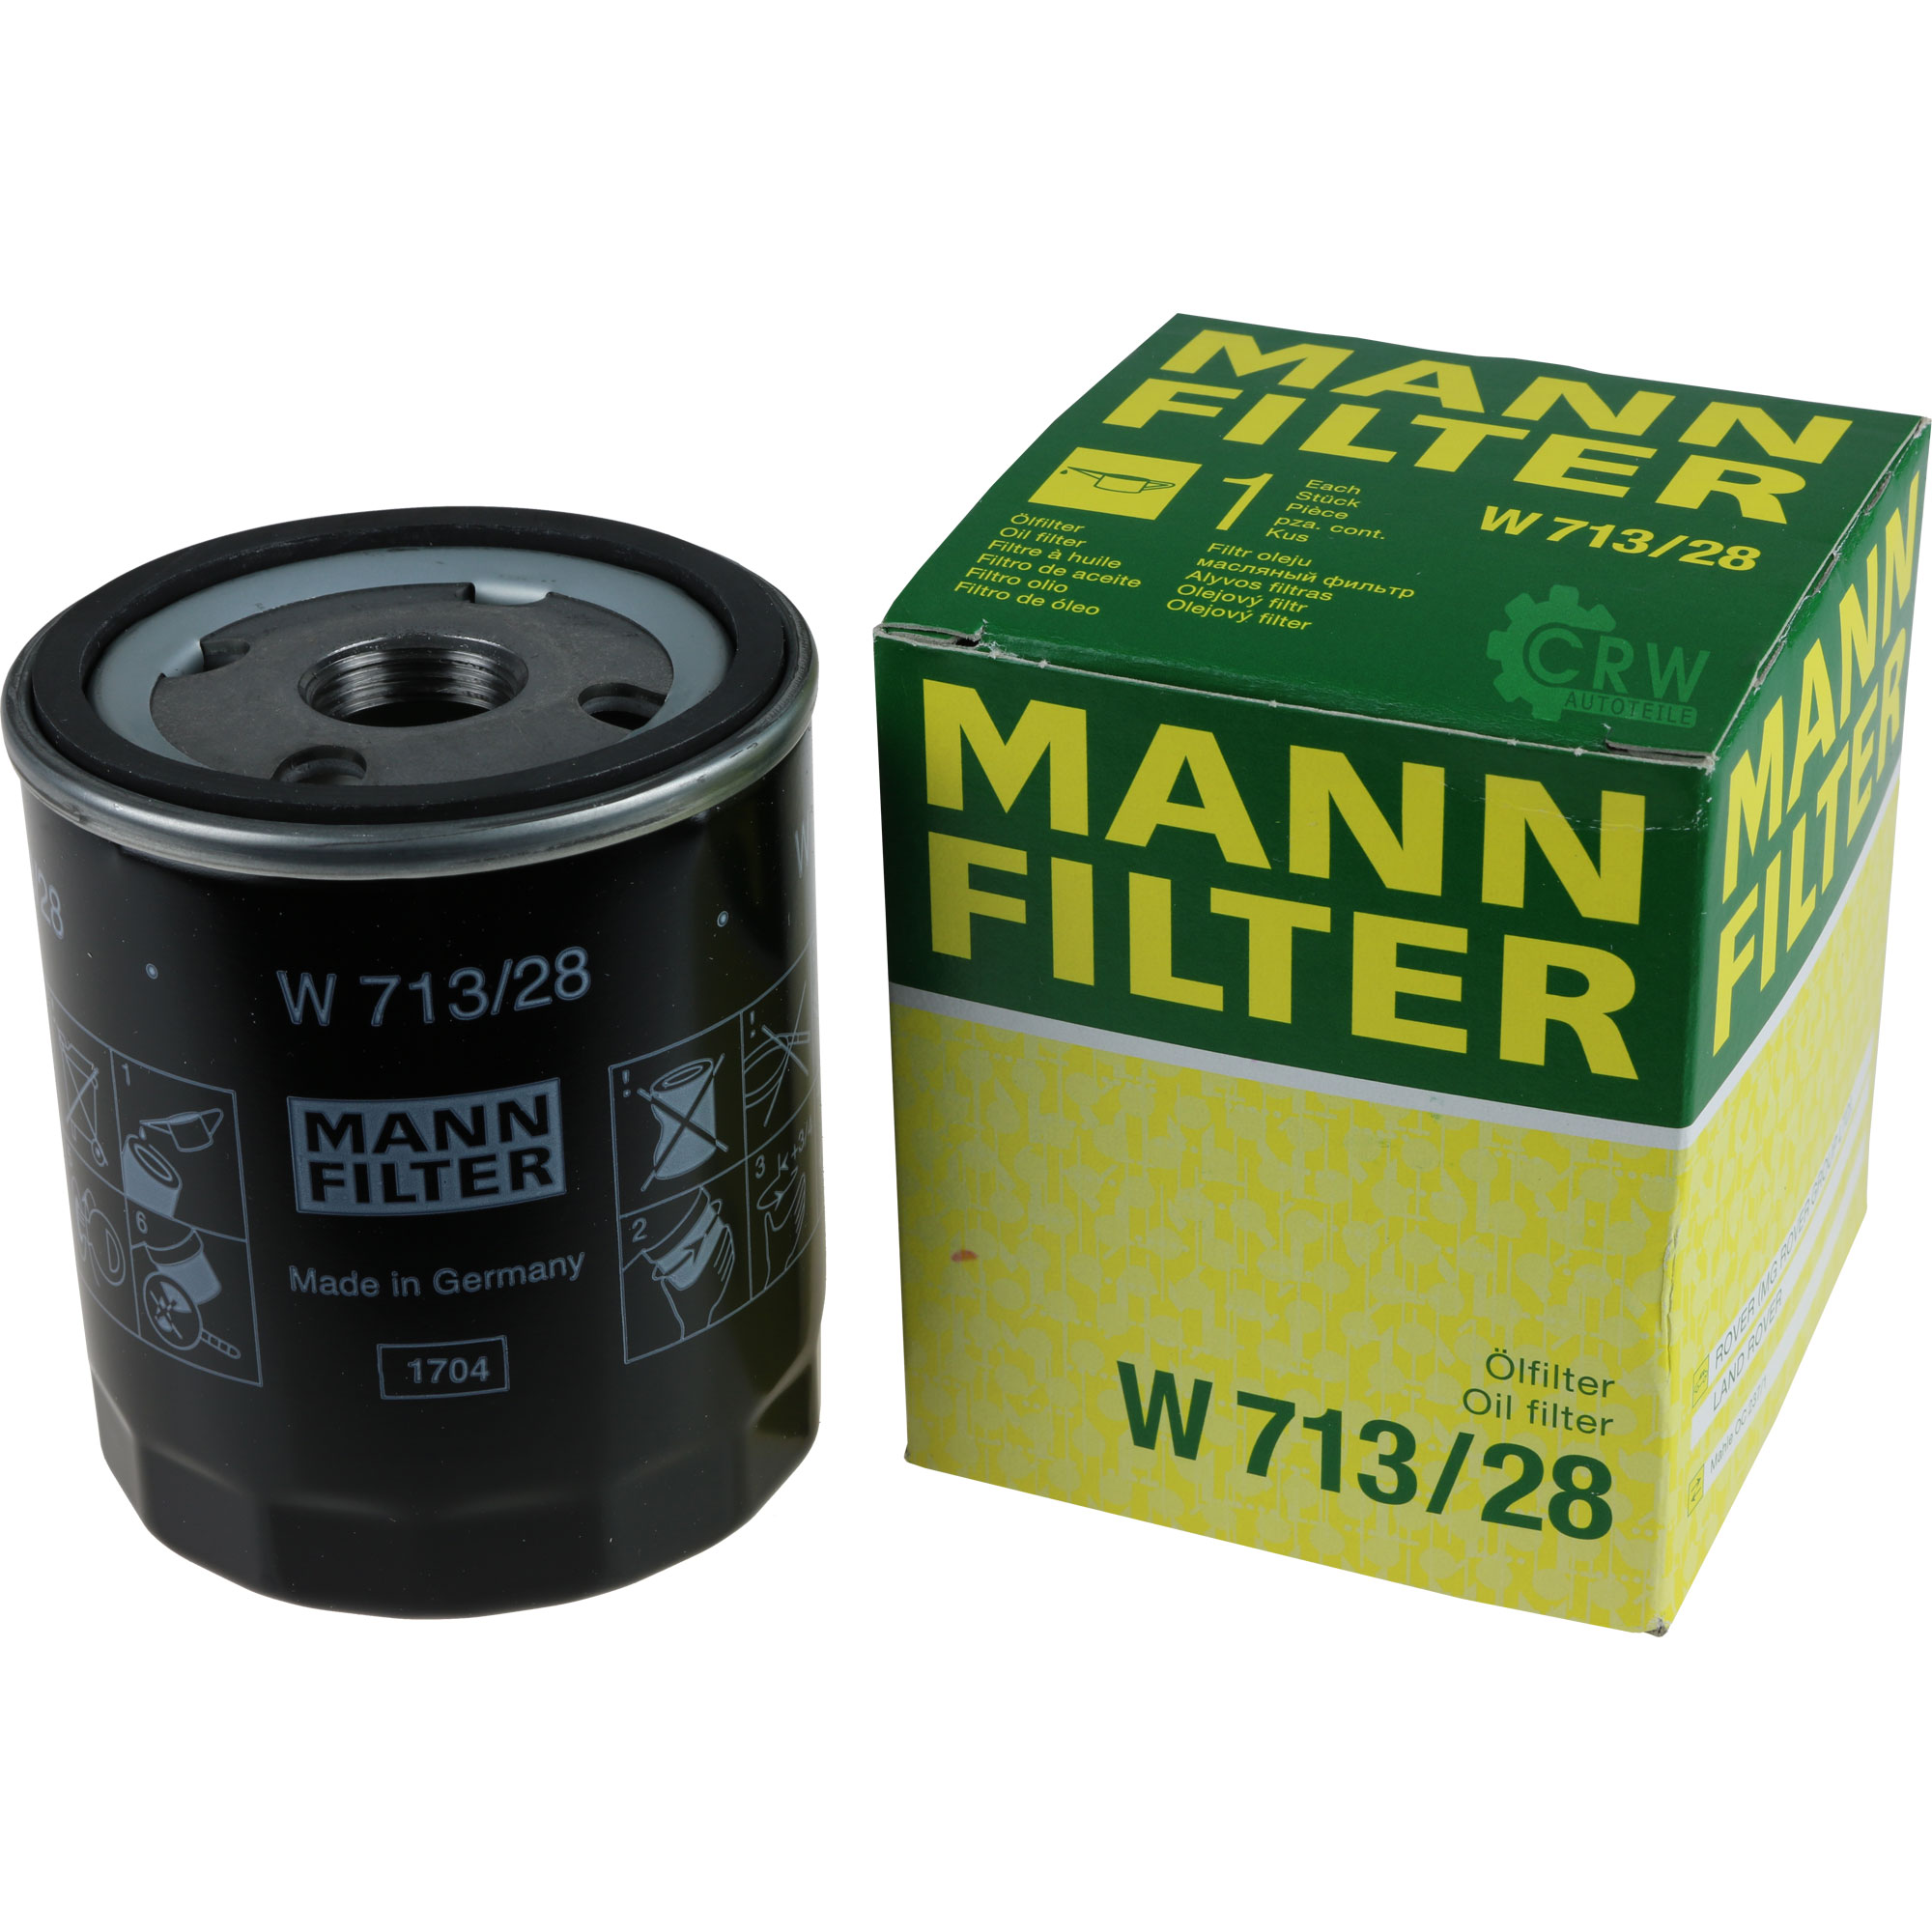 MANN-FILTER Ölfilter W 713/28 Oil Filter